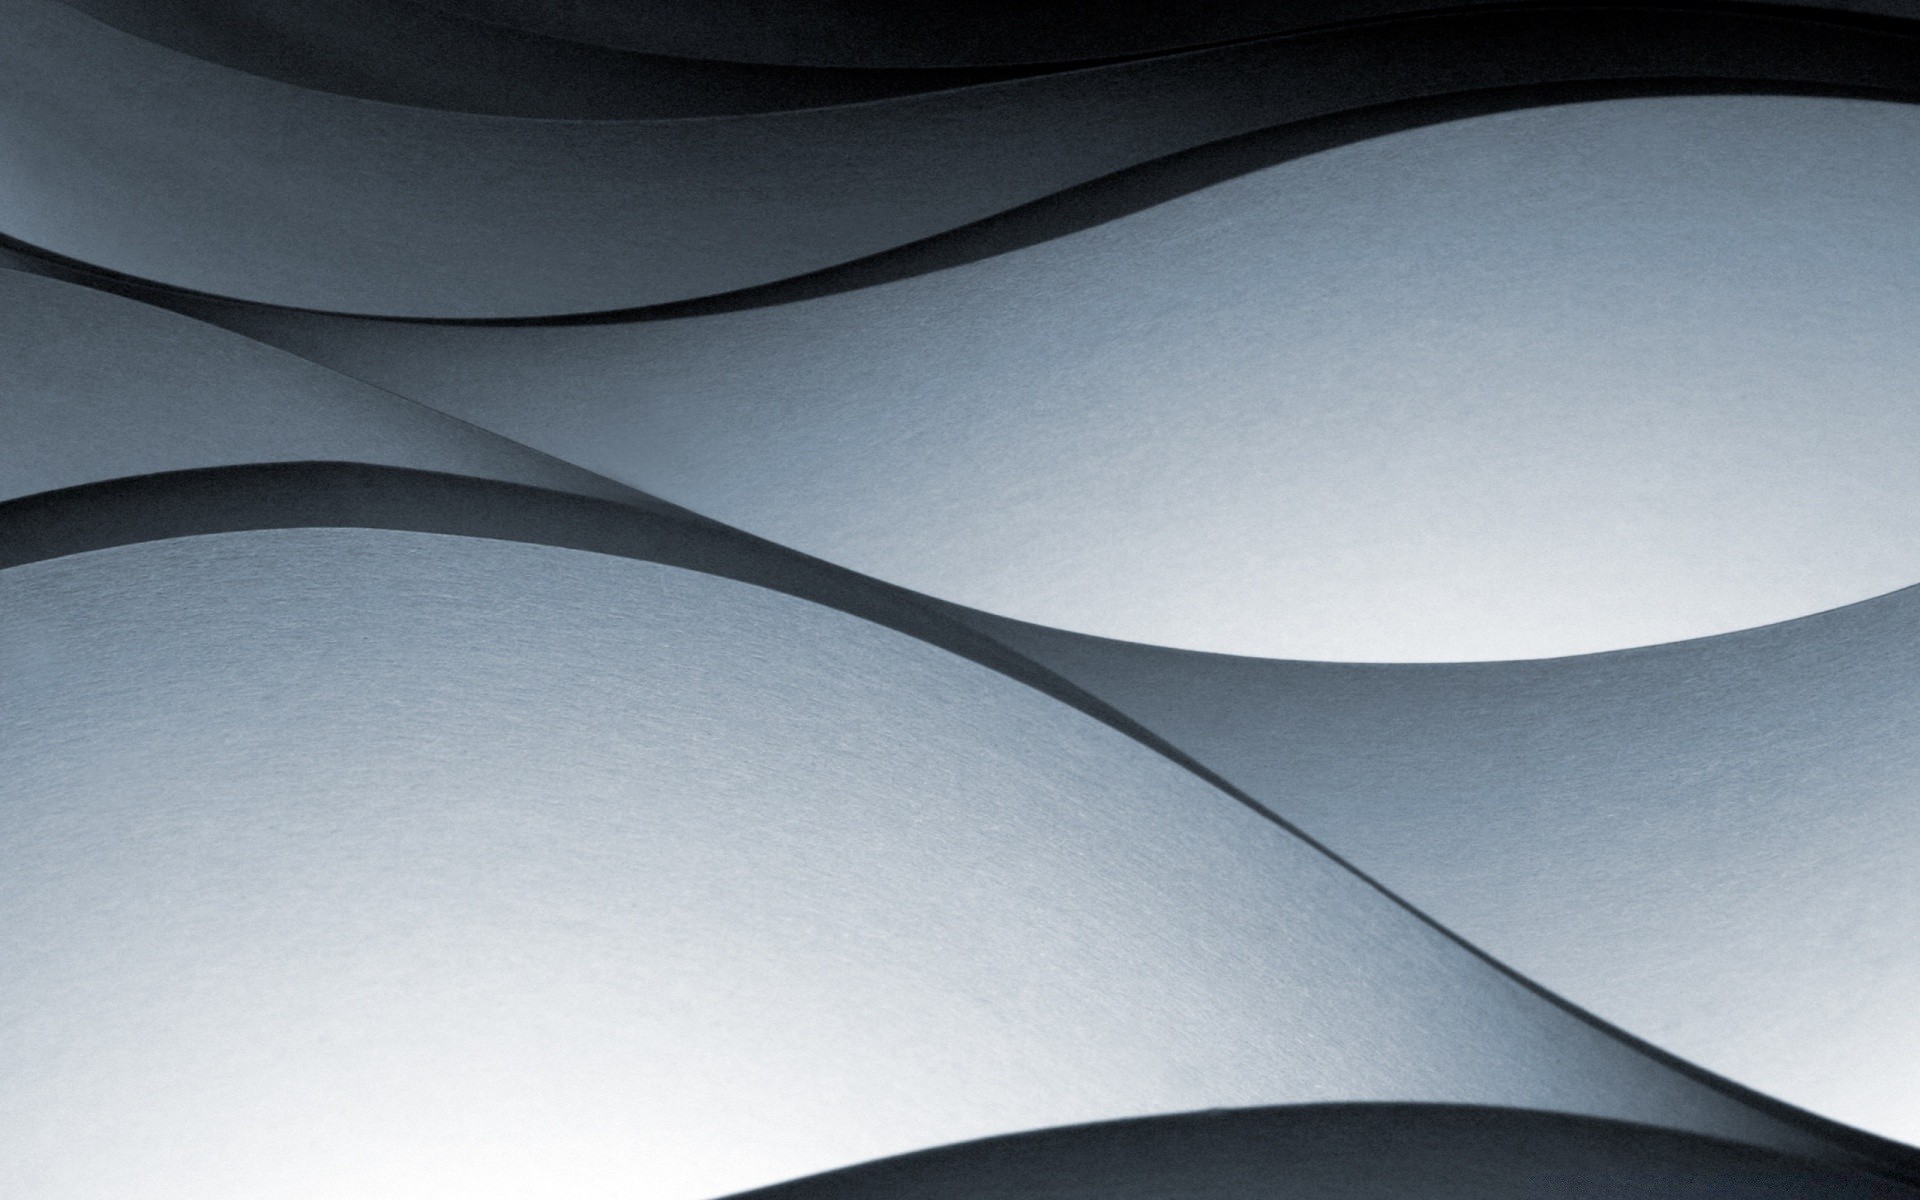 рисунки аннотация кривая формы искусство график свет футуристический современные сюрреалистично рабочего стола дизайн движения обои размытость линия тень иллюстрация фон текстура гладкая